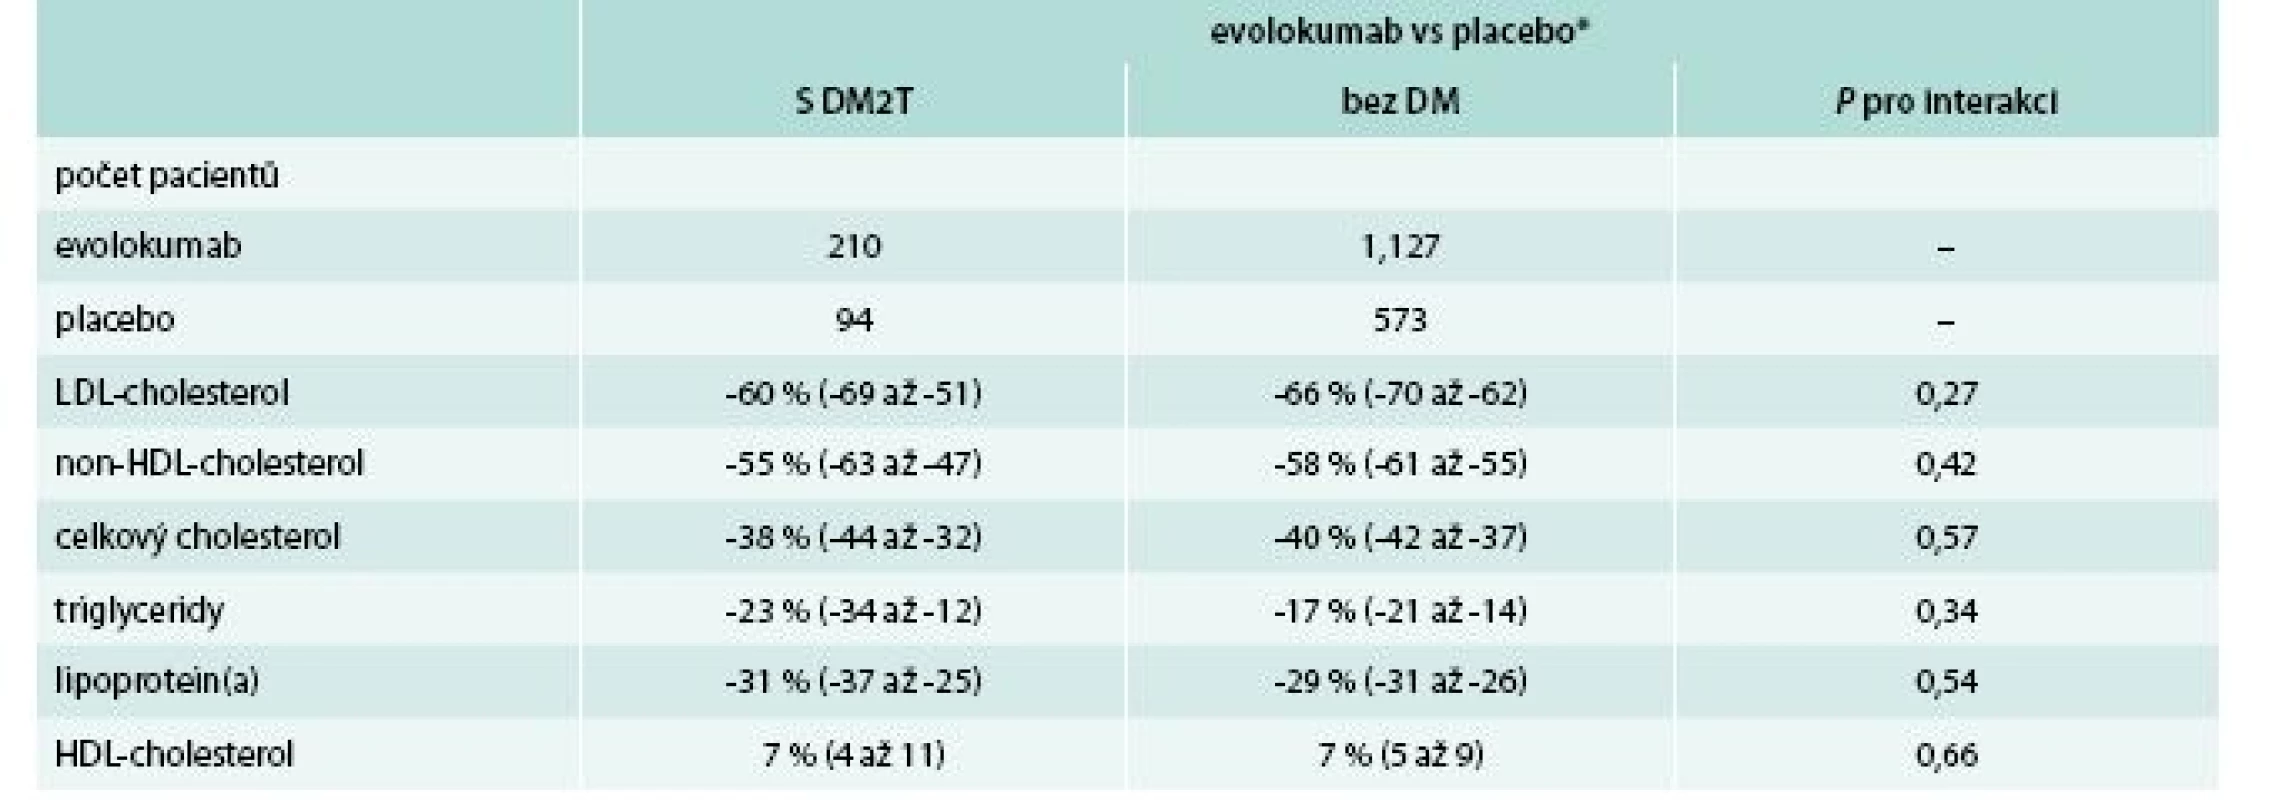 Metaanalýza účinnosti evolokumabu u diabetiků 2. typu evolokumab